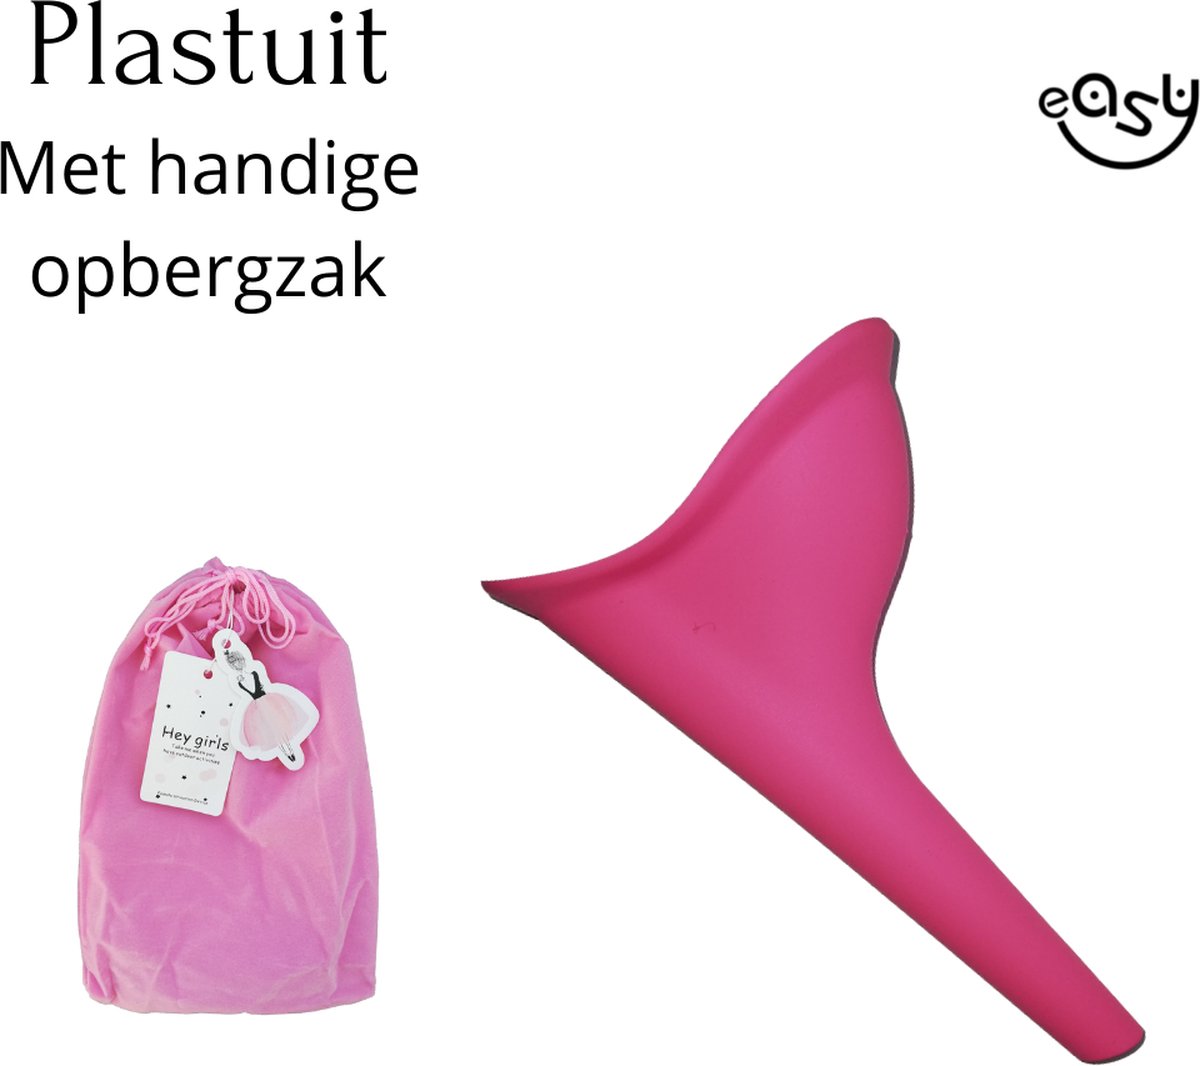 Plastuit - Plastuit voor vrouwen - plastuitje hygiënische herbruikbaar - Plastuitjes - Urinaal - Siliconen - plaskoker - easy